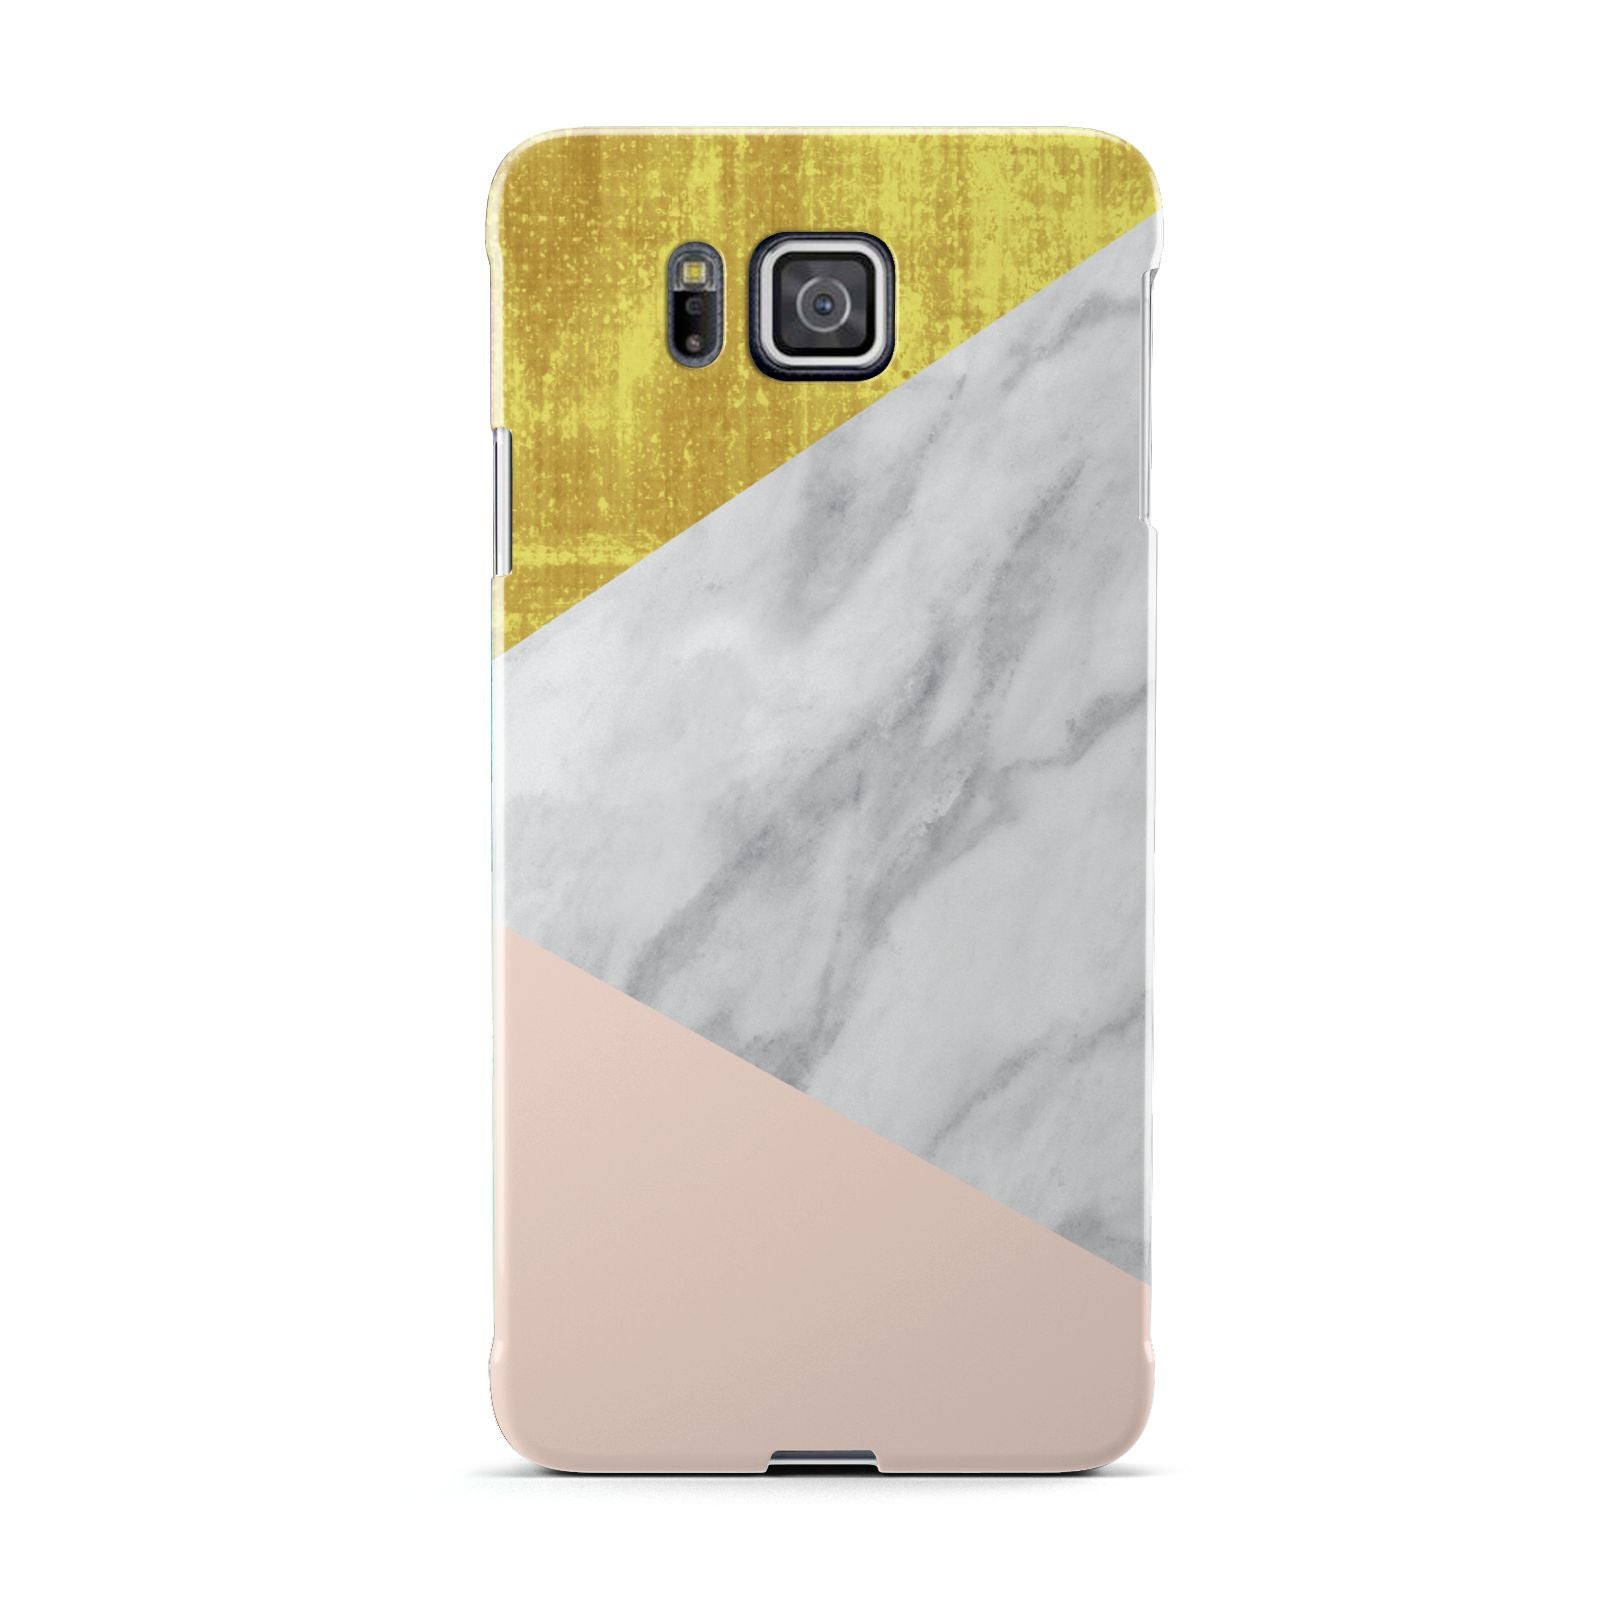 Marble White Gold Foil Peach Samsung Galaxy Alpha Case